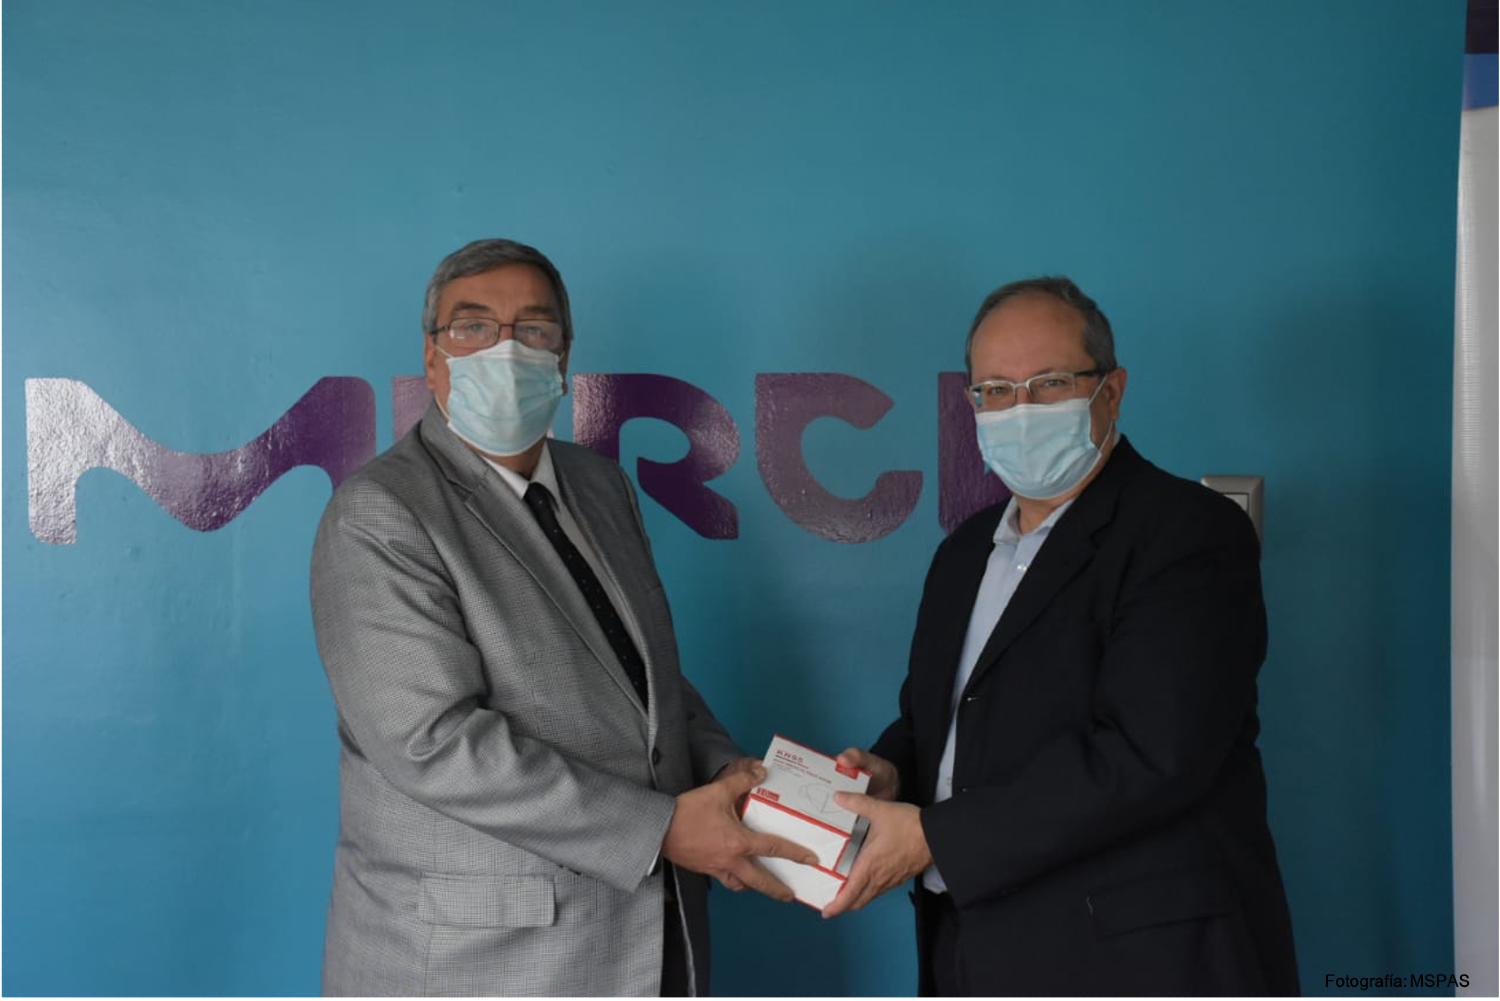 La lucha contra el COVID-19 continua: Merck, compañía líder en ciencia y tecnología realiza donativo de 225,000 mascarillas a Instituciones de Salud en Centroamérica y el Caribe 